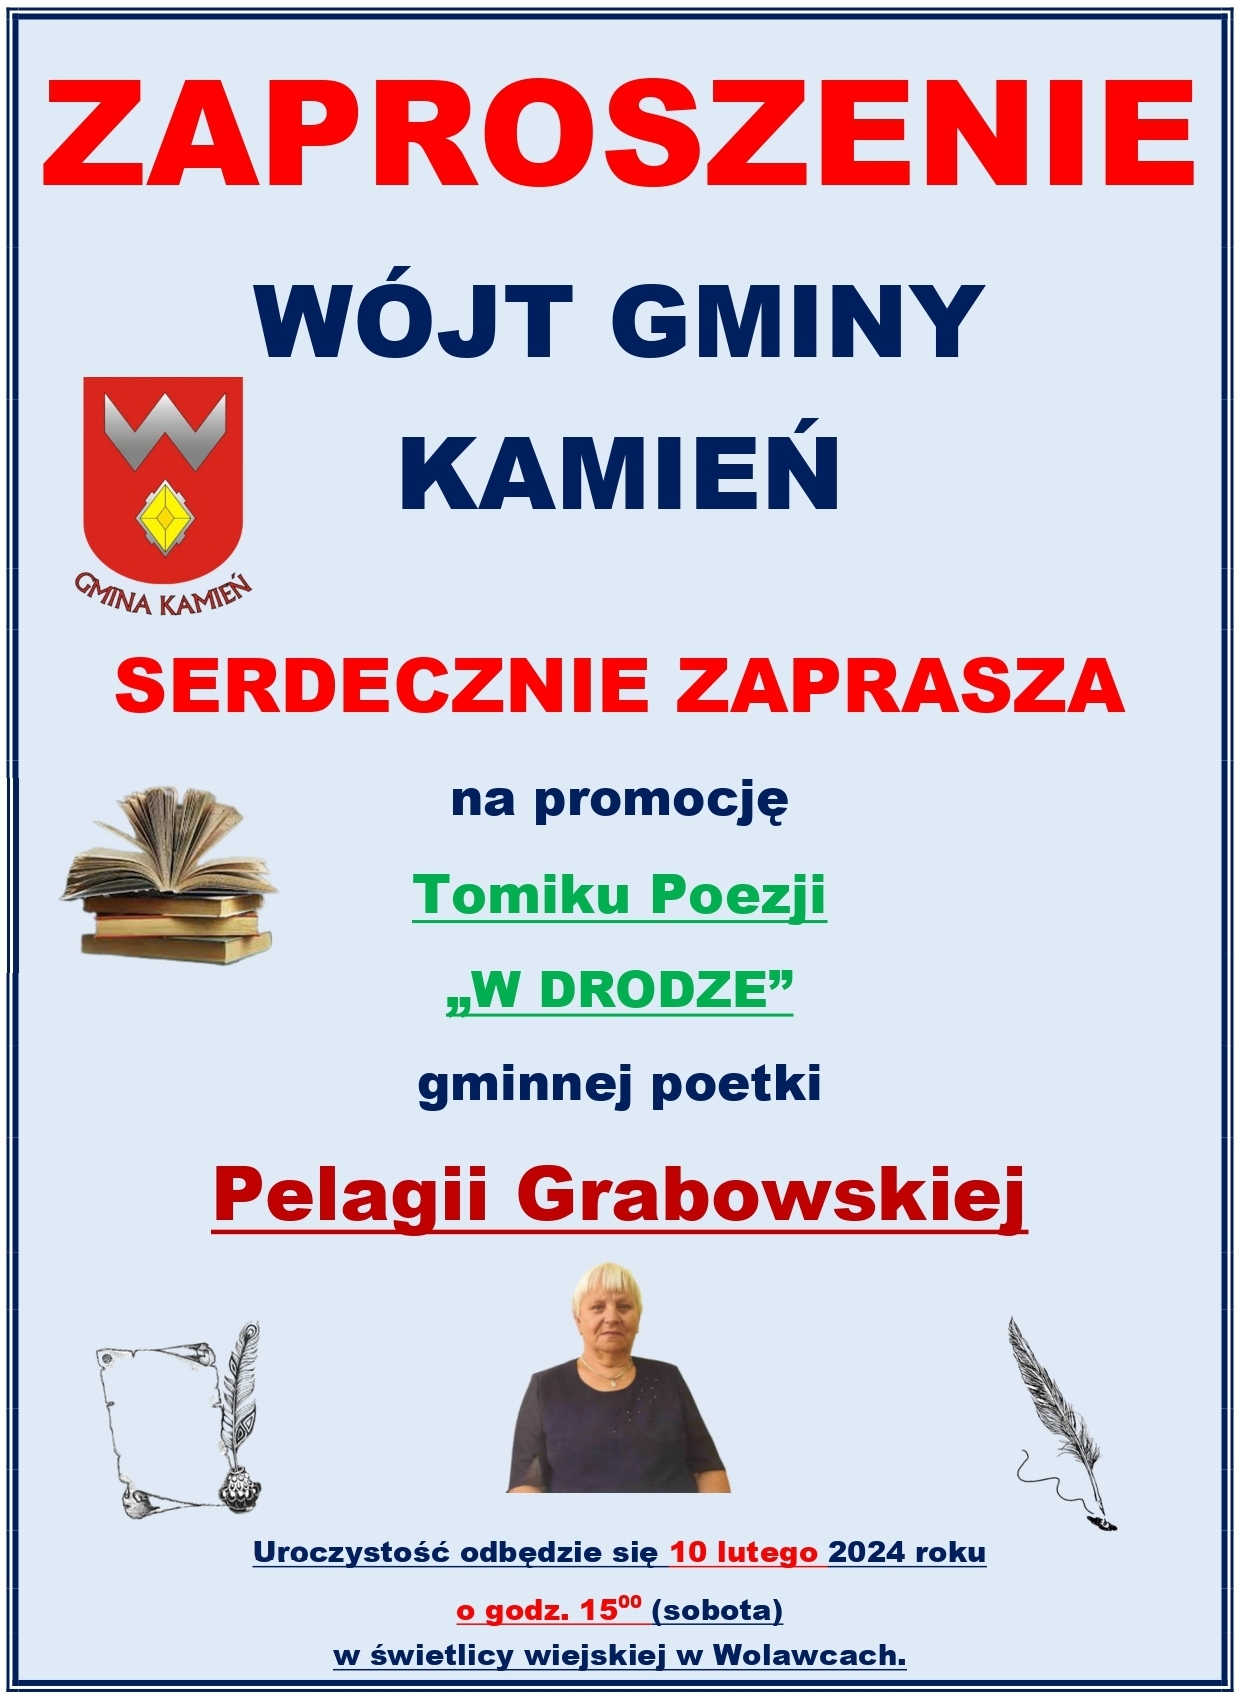 Zaproszenie na na promocję Tomiku Poezji Pelagii Grabowskiej